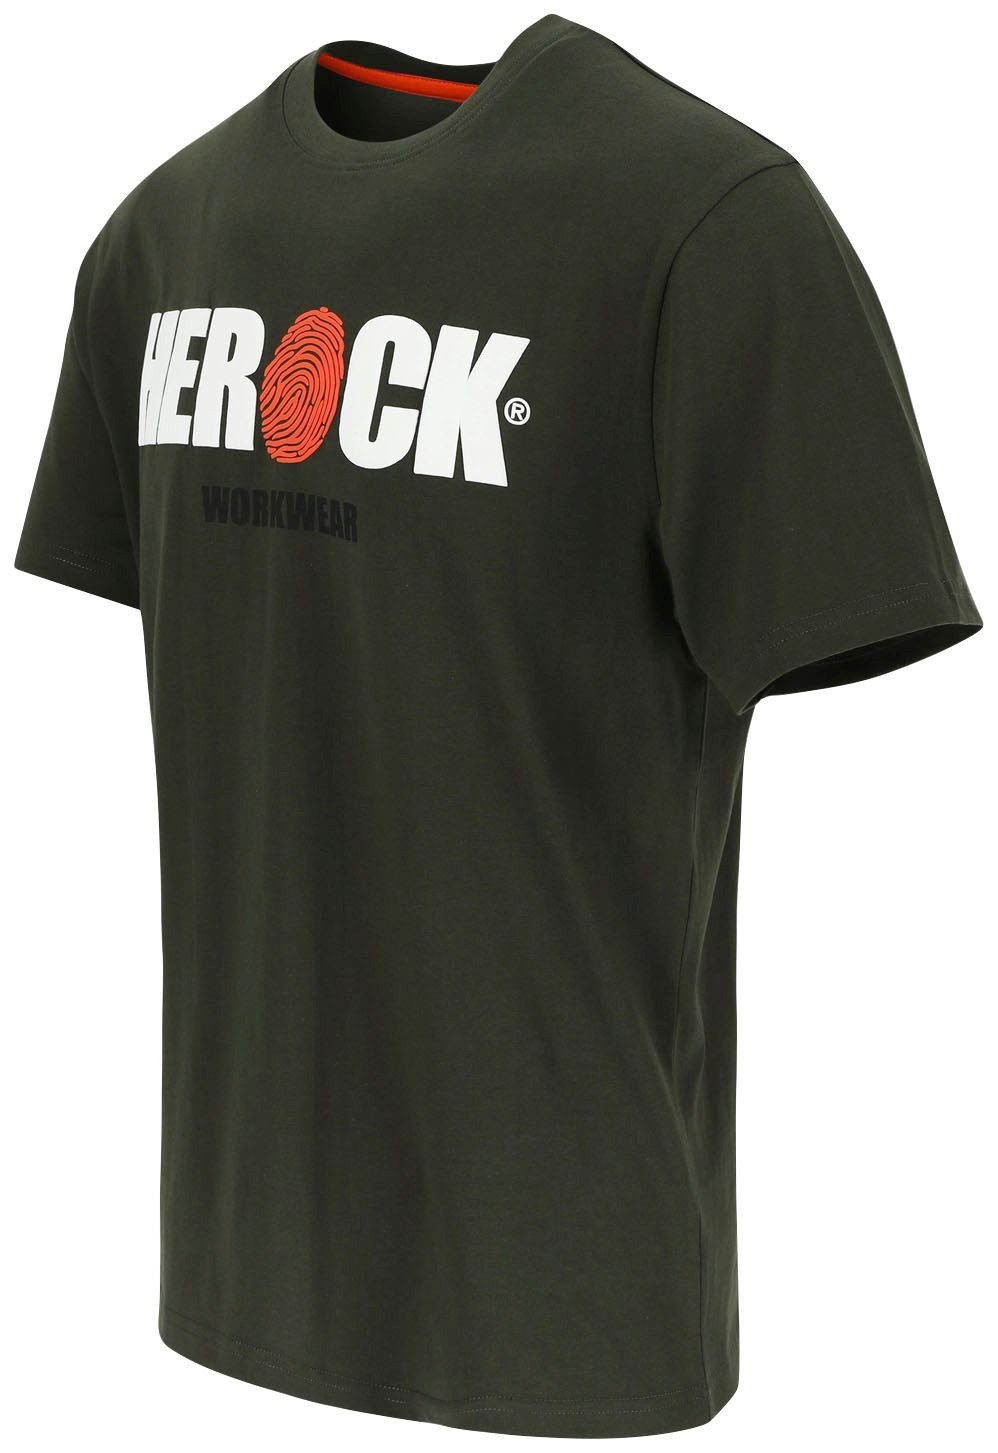 Herock T-Shirt Herock®-Aufdruck, Baumwolle, Rundhals, mit khaki angenehmes Tragegefühl ENI